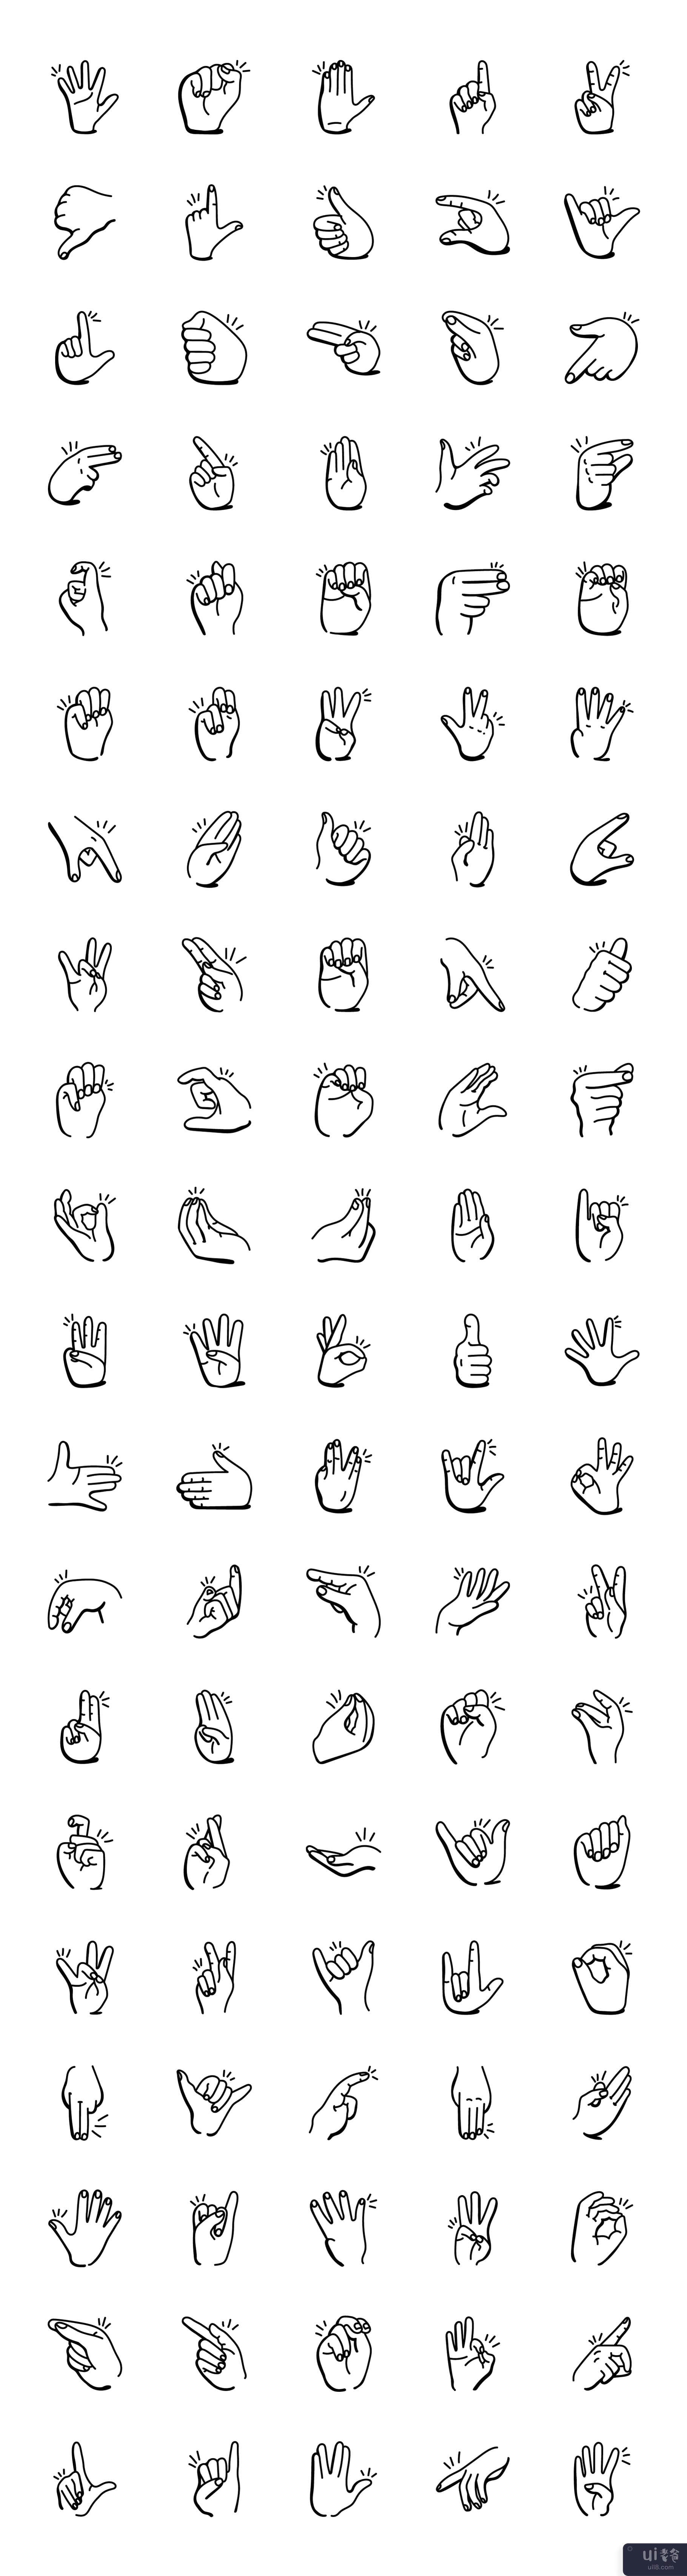 涂鸦手语图标的集合(Collection of Doodle Sign Language Icons)插图2